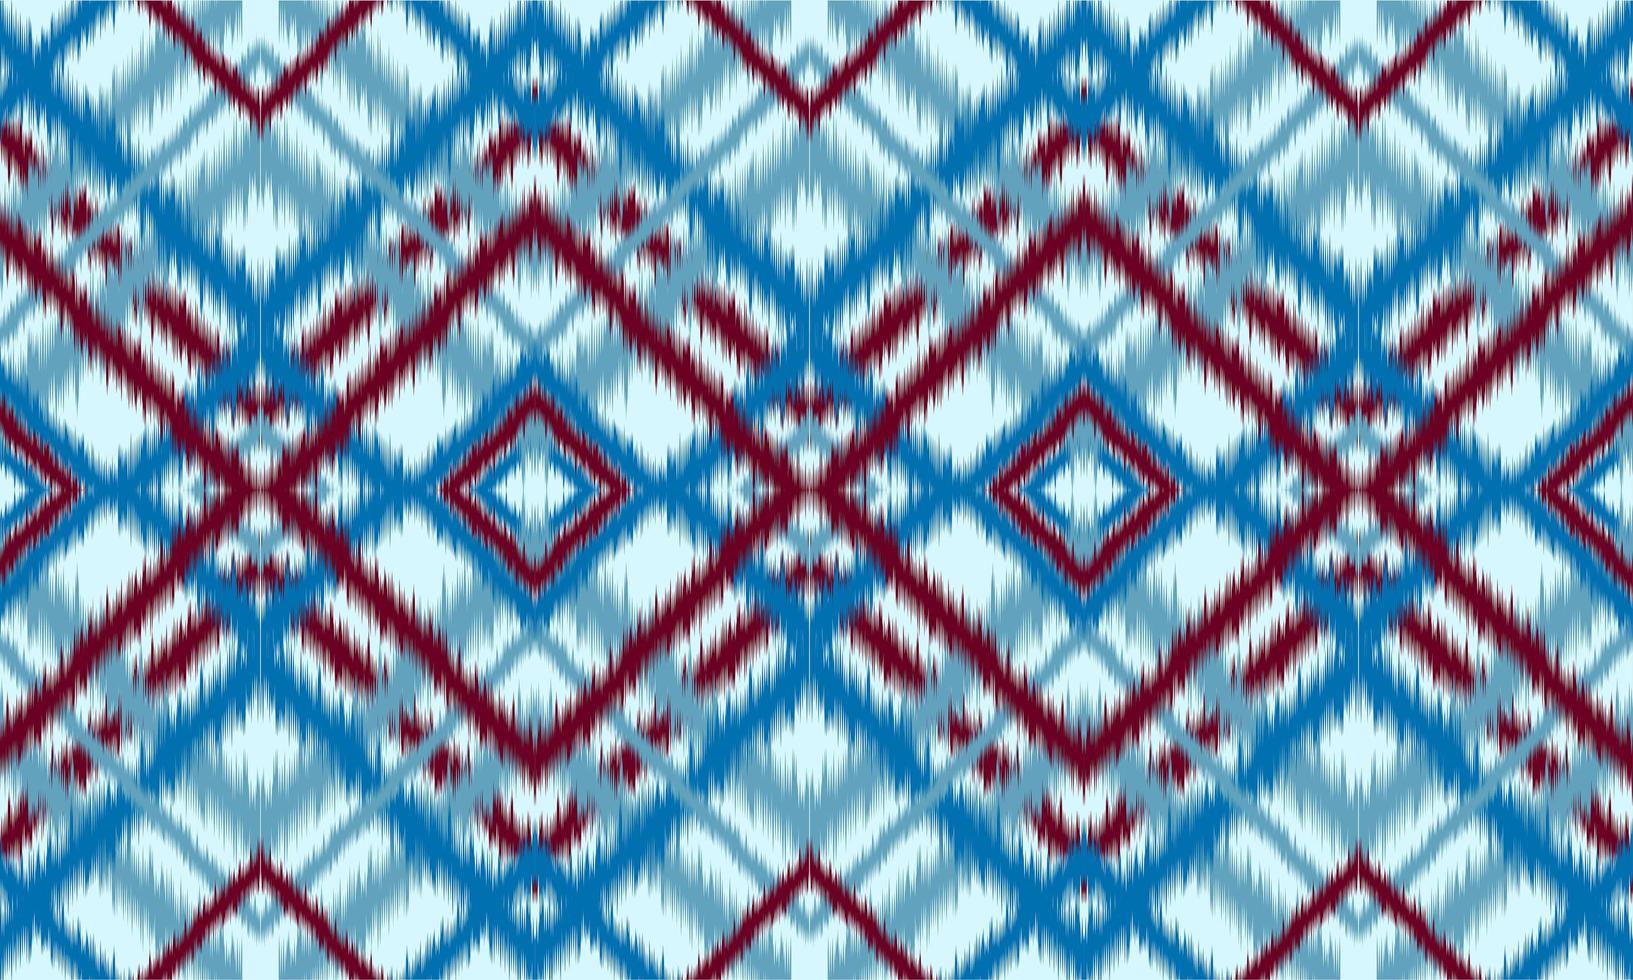 abstrakt etnisk ikat chevron mönster bakgrund. ,matta,tapeter,kläder,omslag,batik,tyg,vektorillustration.broderistil. vektor